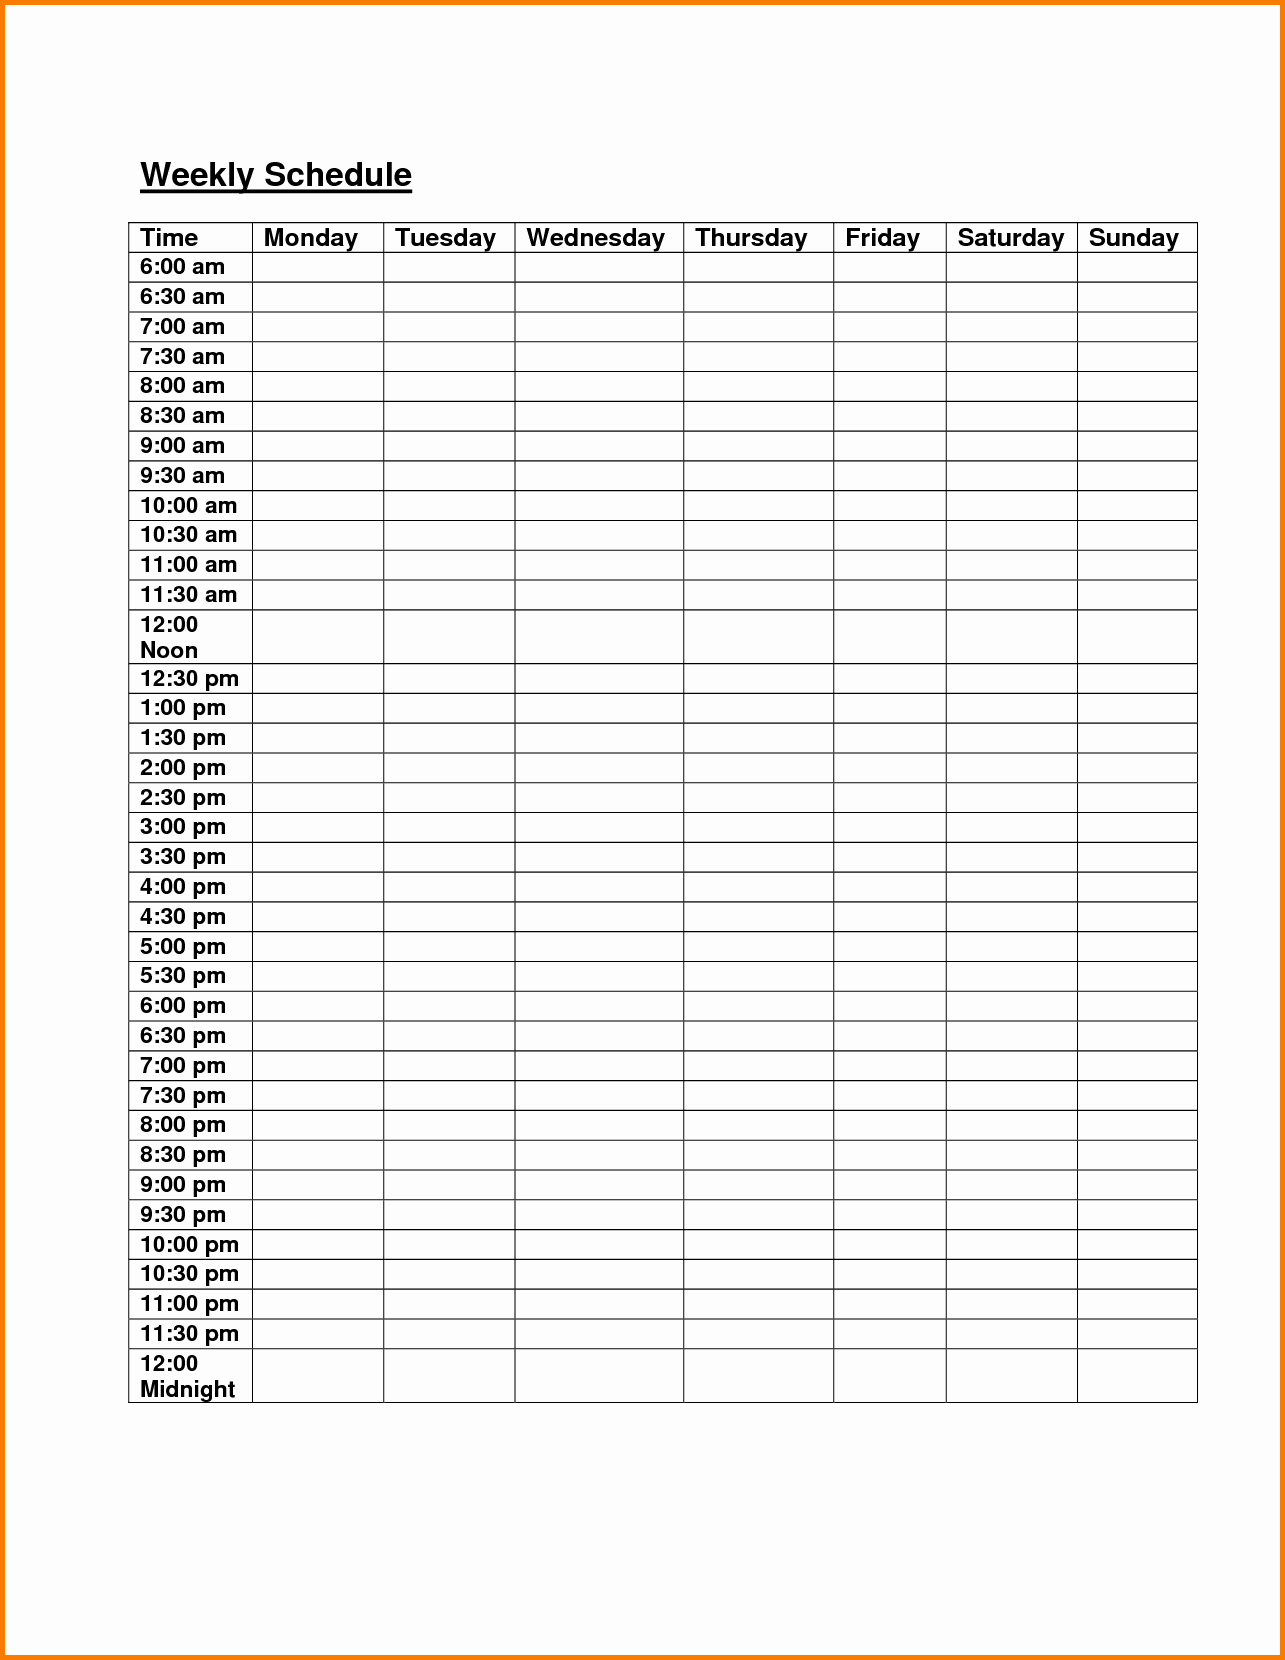 Weekly Class Schedule Template Elegant Weekly Class Schedule Template